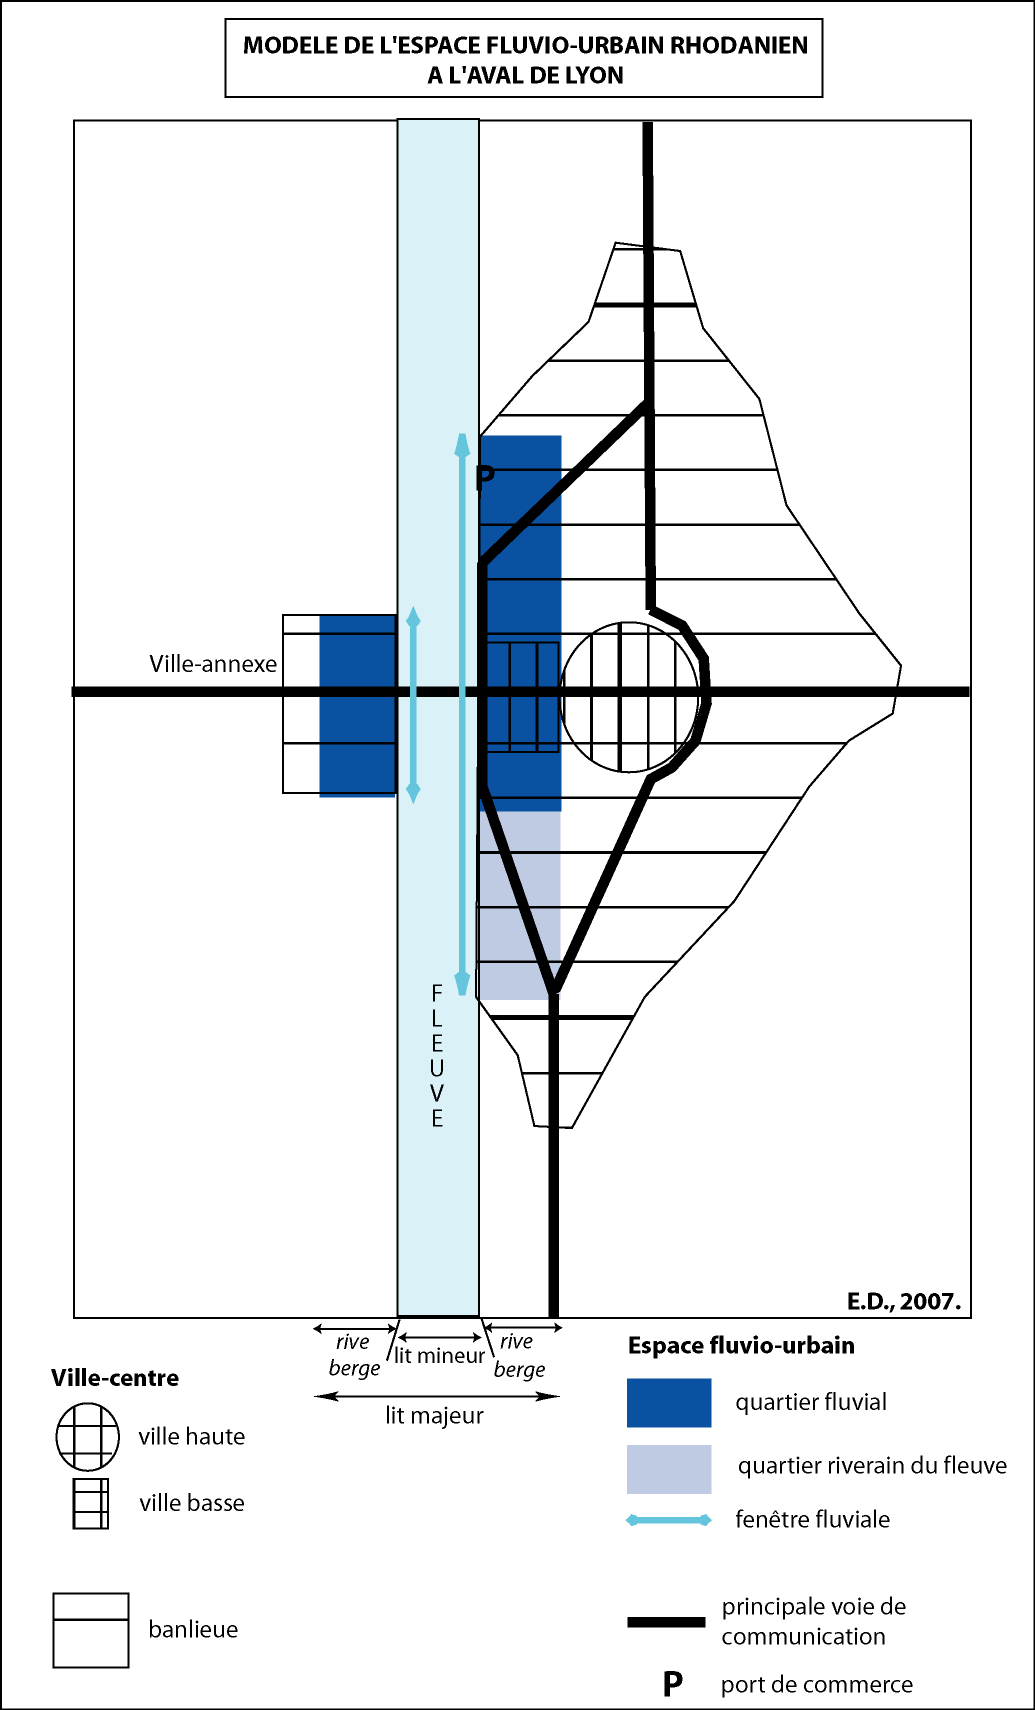 Figure 35. Modèle de la morphologie urbaine rhodanienne à l'aval de Lyon